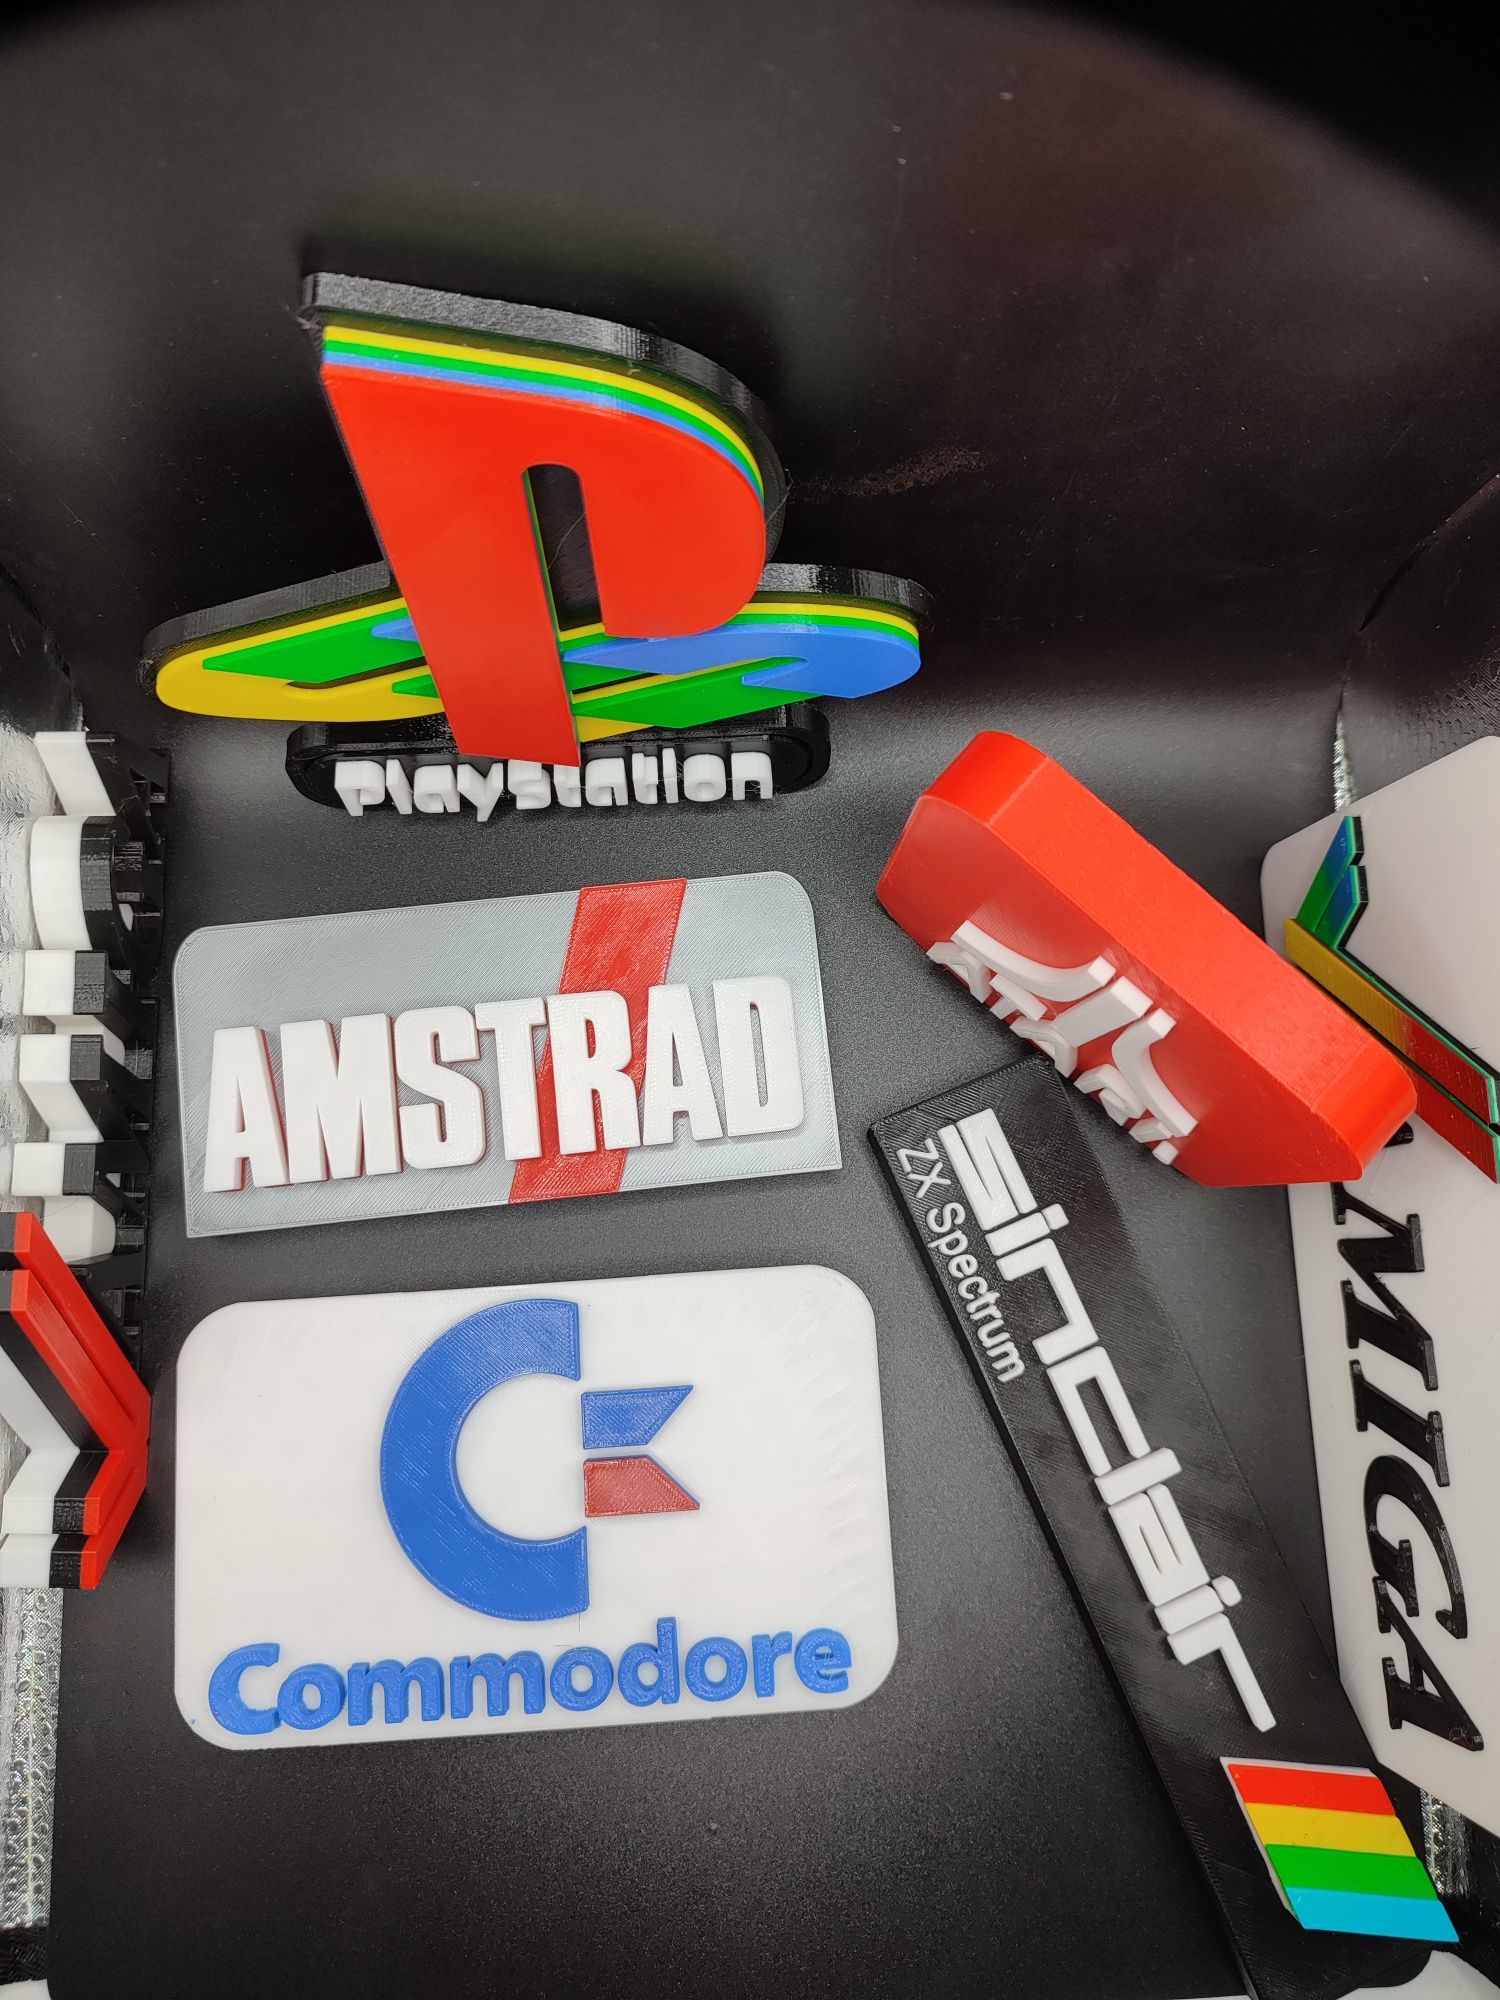 RETRO Napisy ozdobne do kolekcji - Atari,Commodore,PS,Amiga,Sinclair